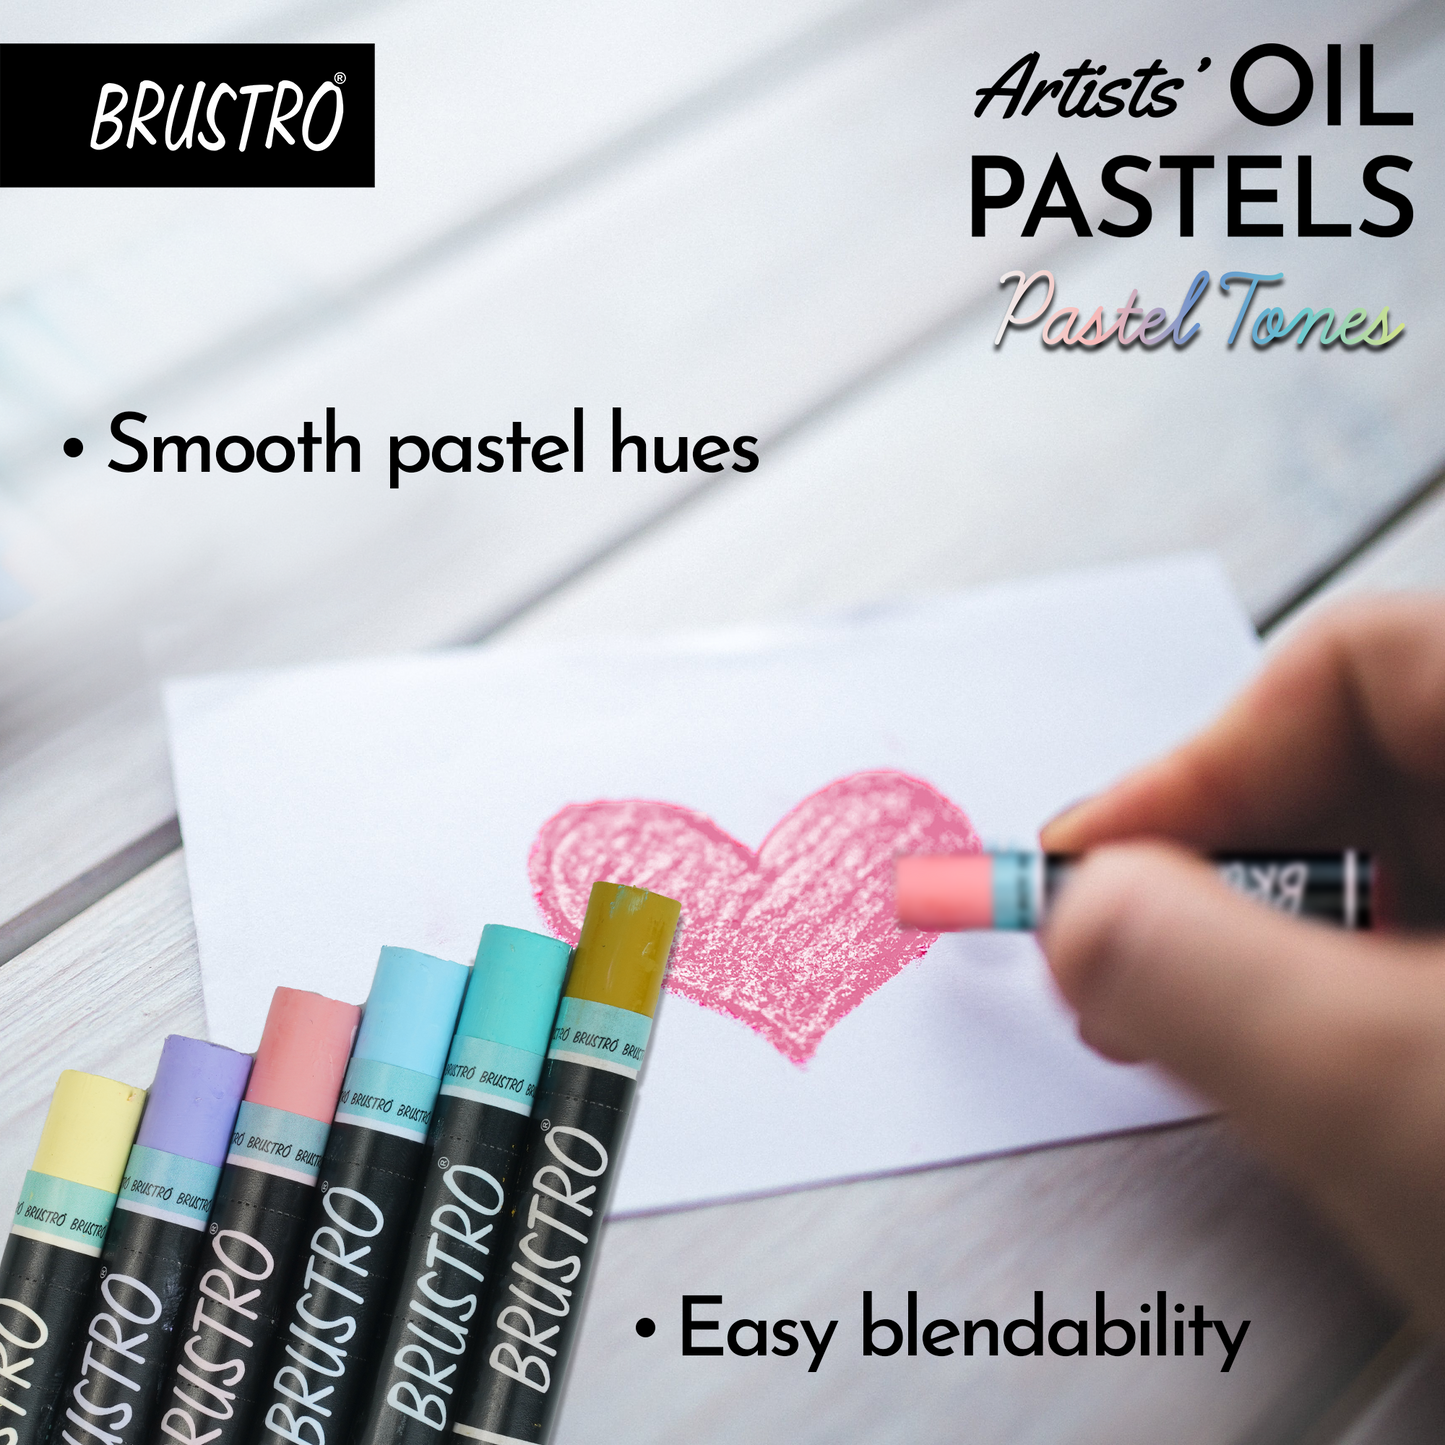 BRUSTRO Artist Oil pastel set of 24 (Pastel Tones)